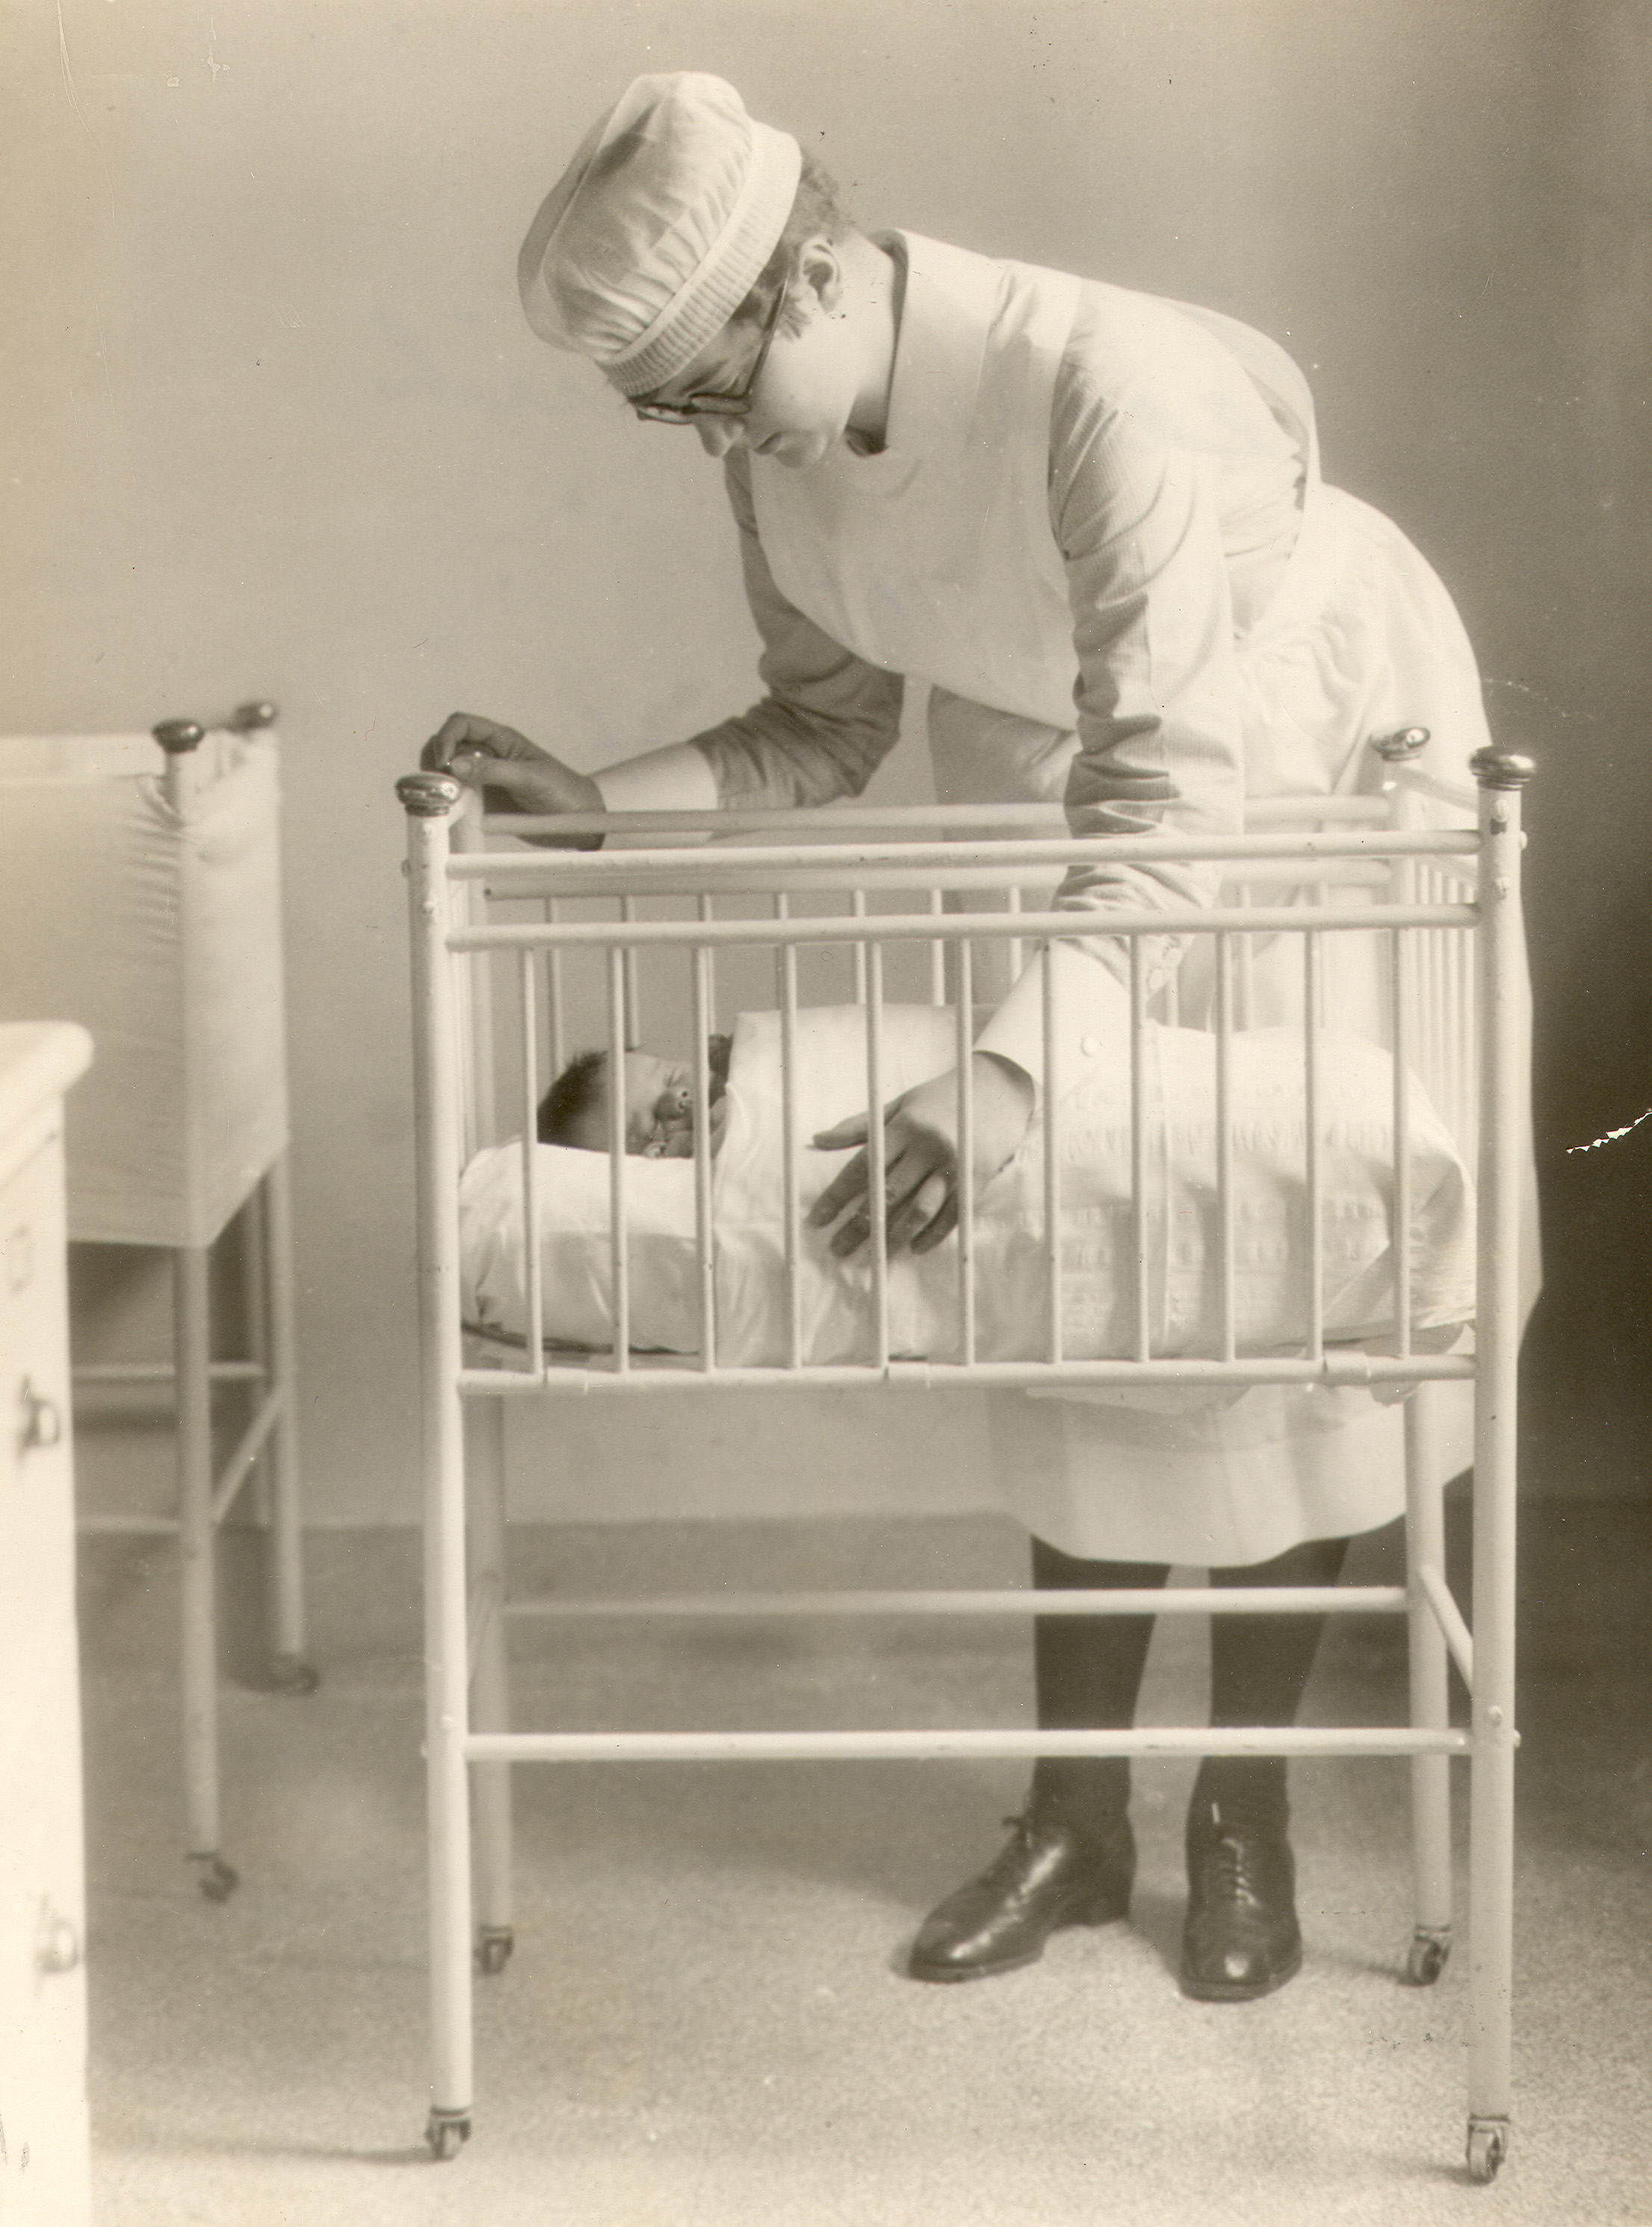 Une jeune femme se penche sur un berceau où se trouve un bébé. Elle porte un uniforme d’infirmière.